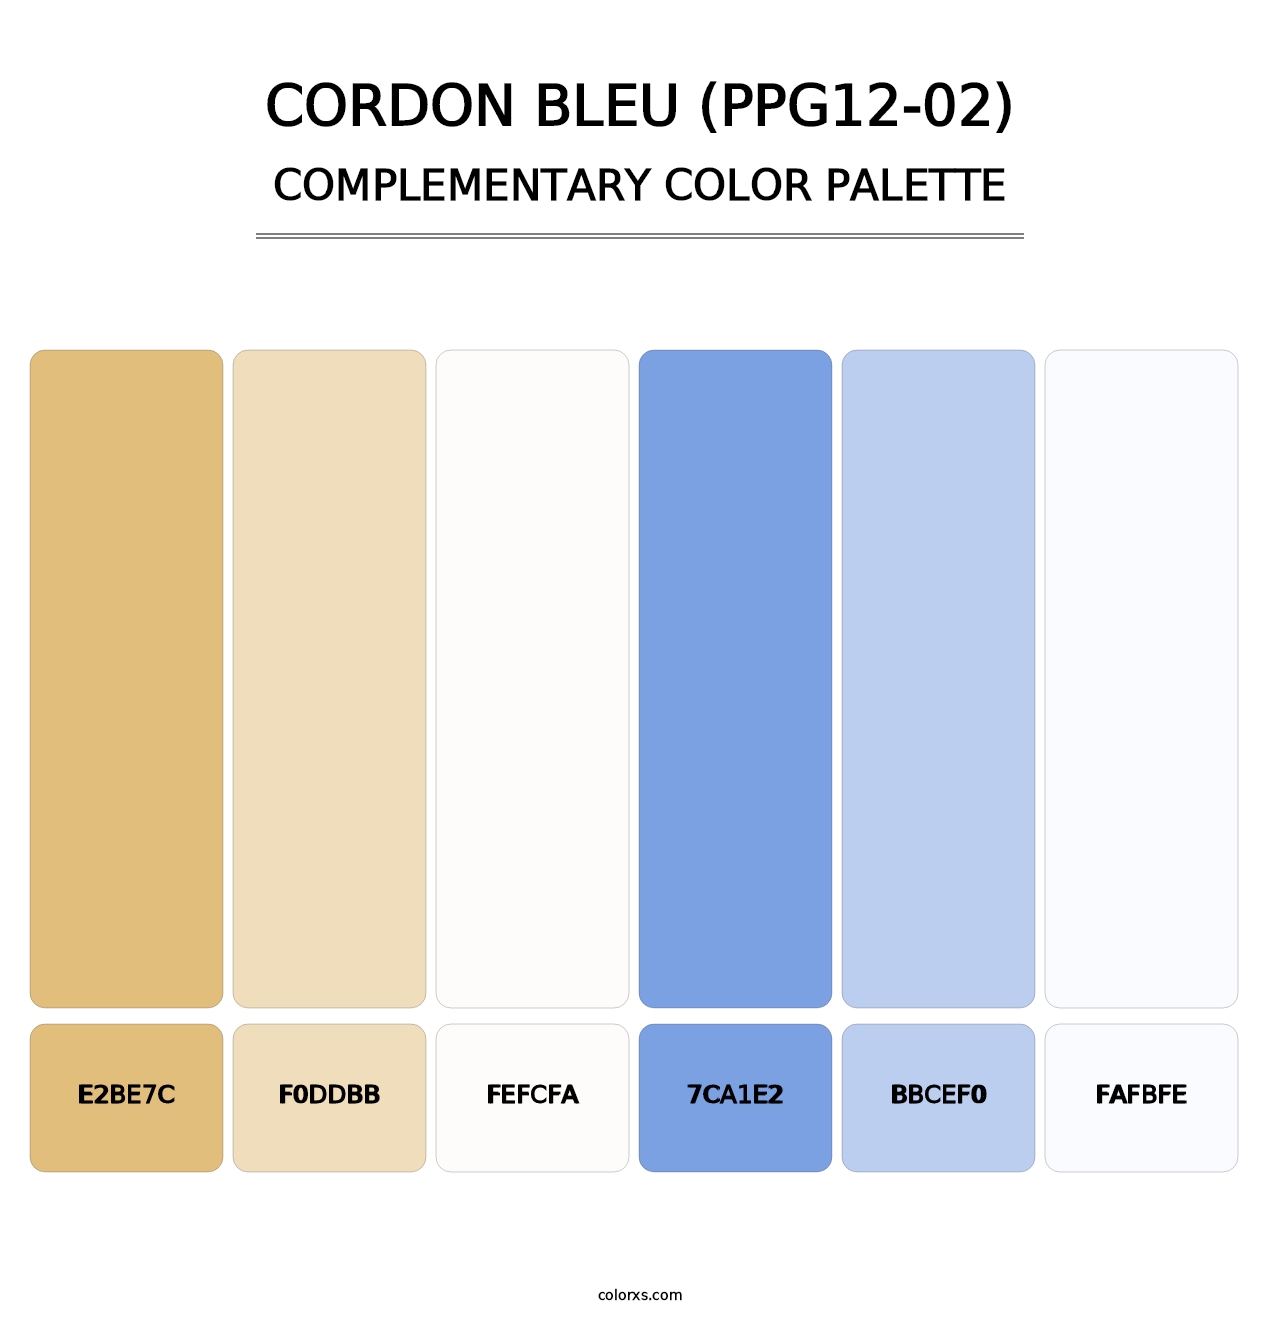 Cordon Bleu (PPG12-02) - Complementary Color Palette